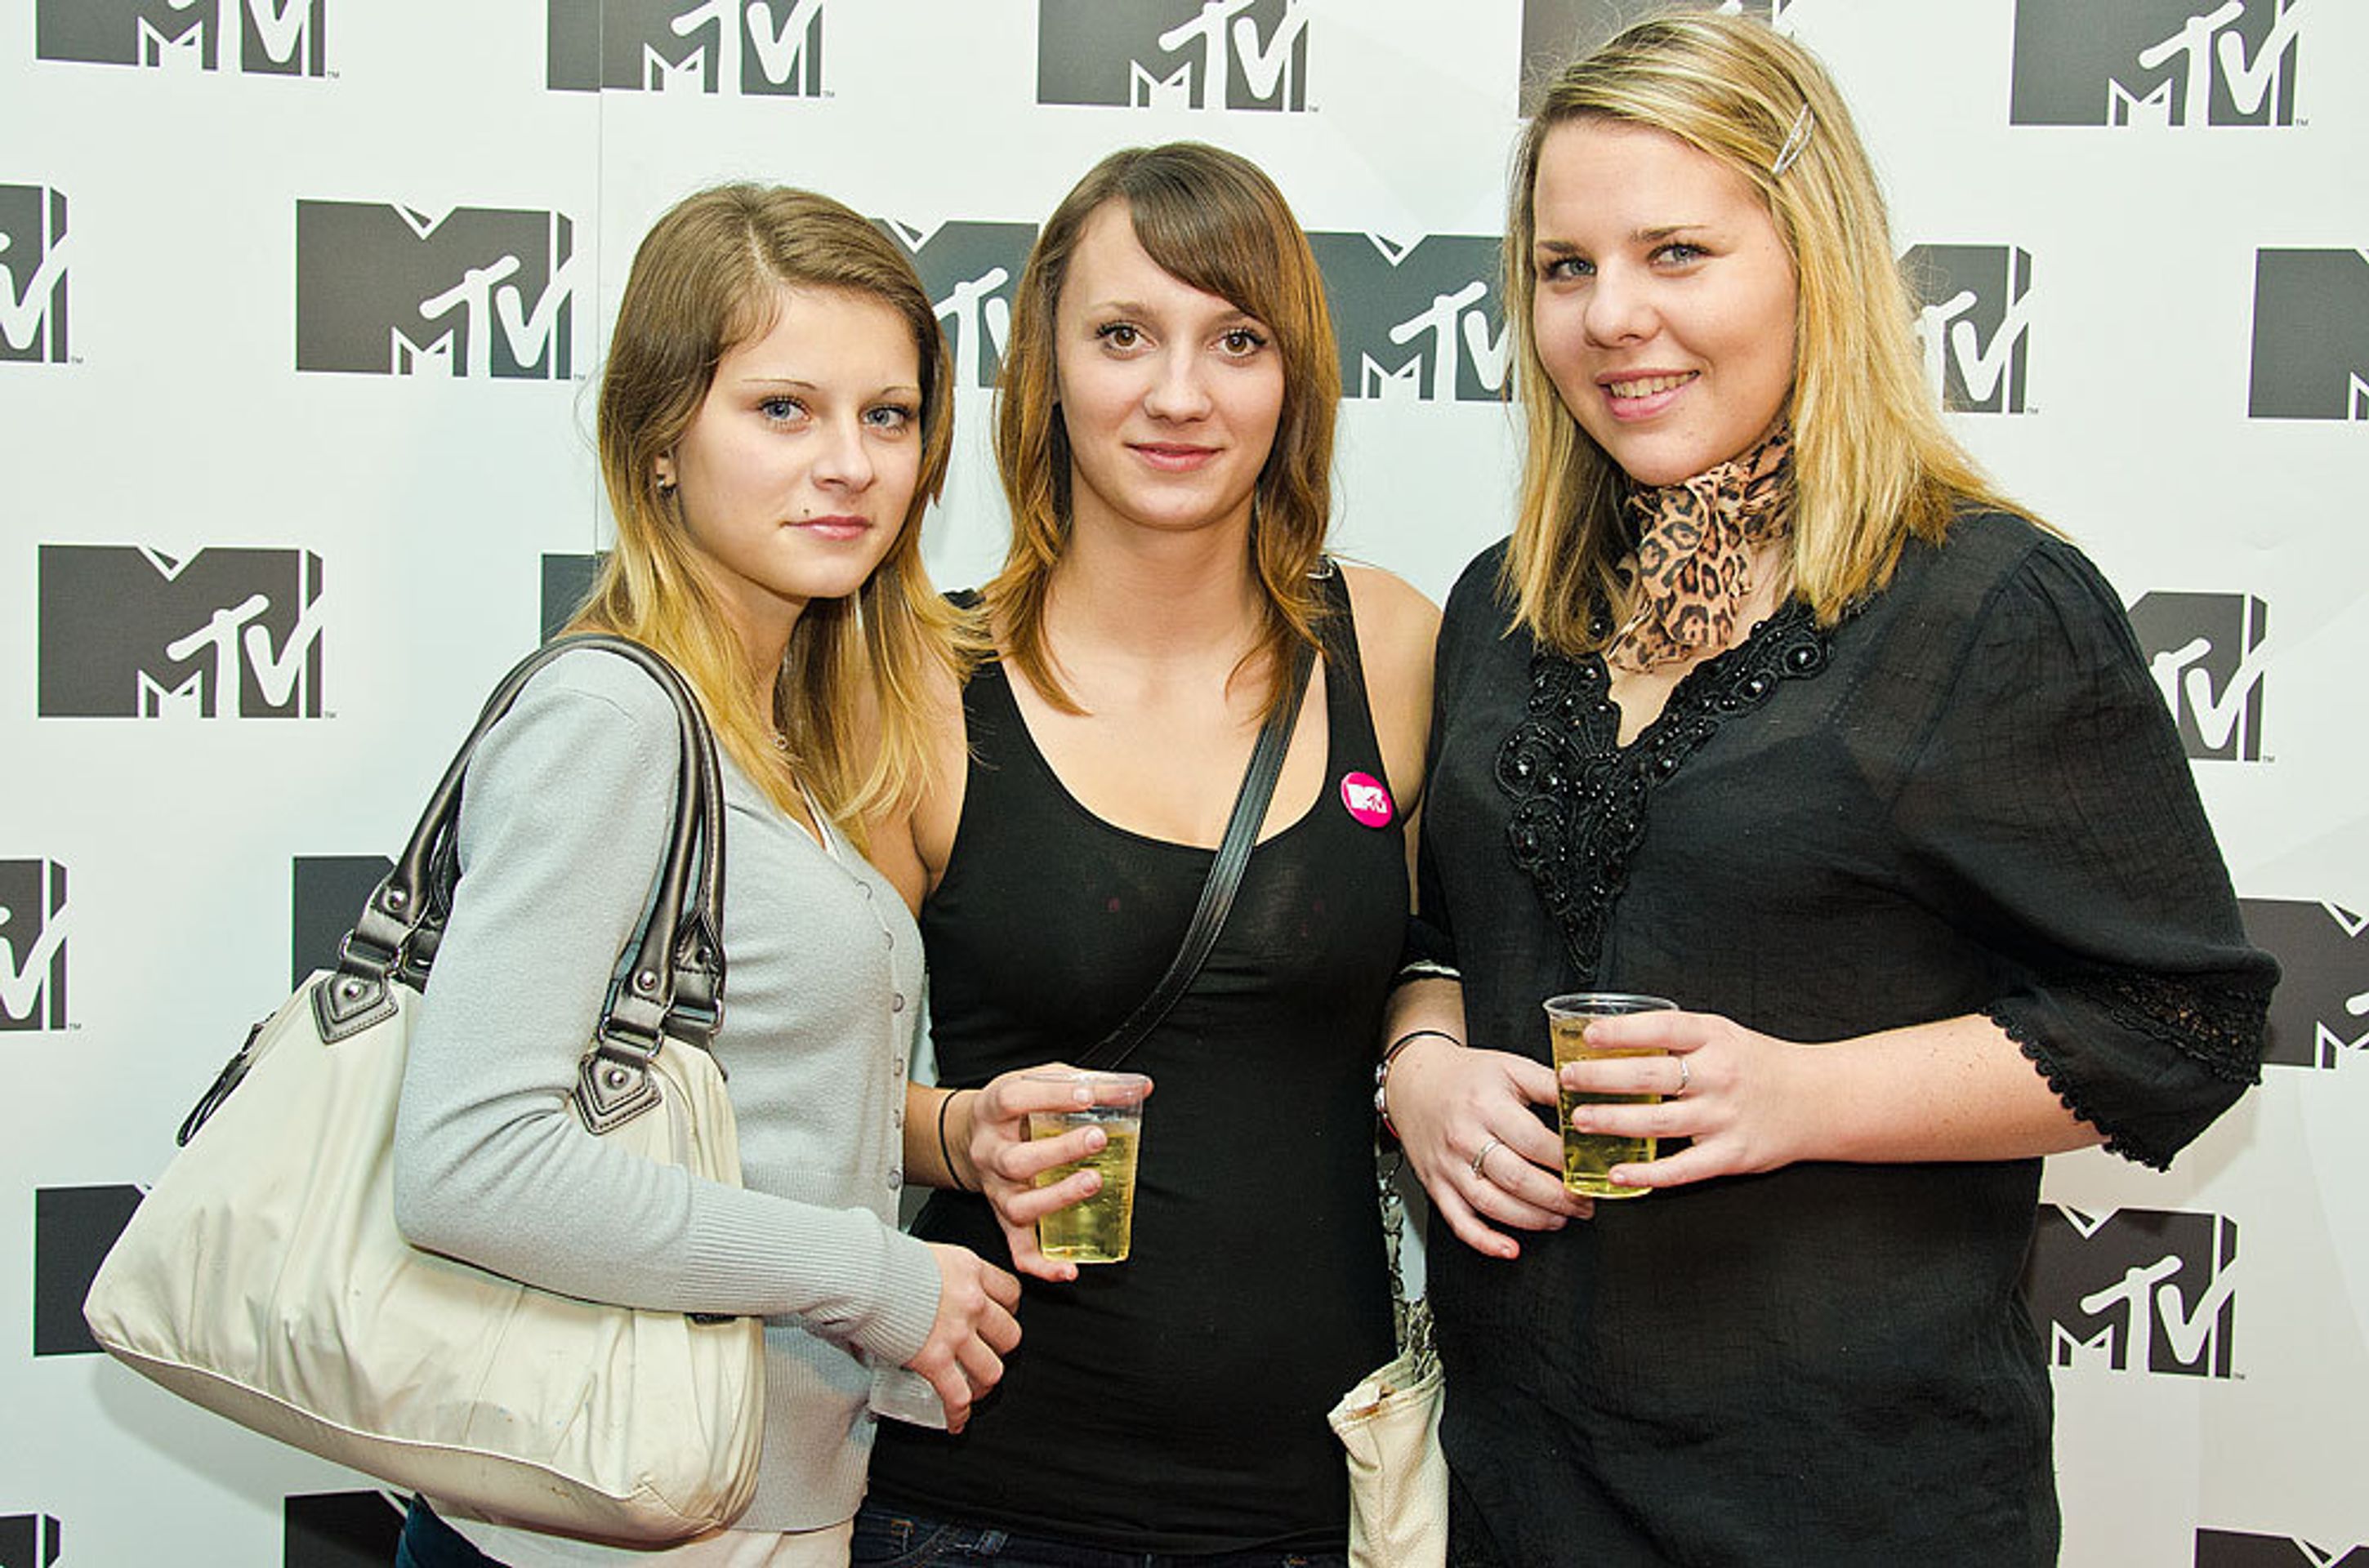 MTV - 7 - MTV oslavila třetí narozeniny (3/10)